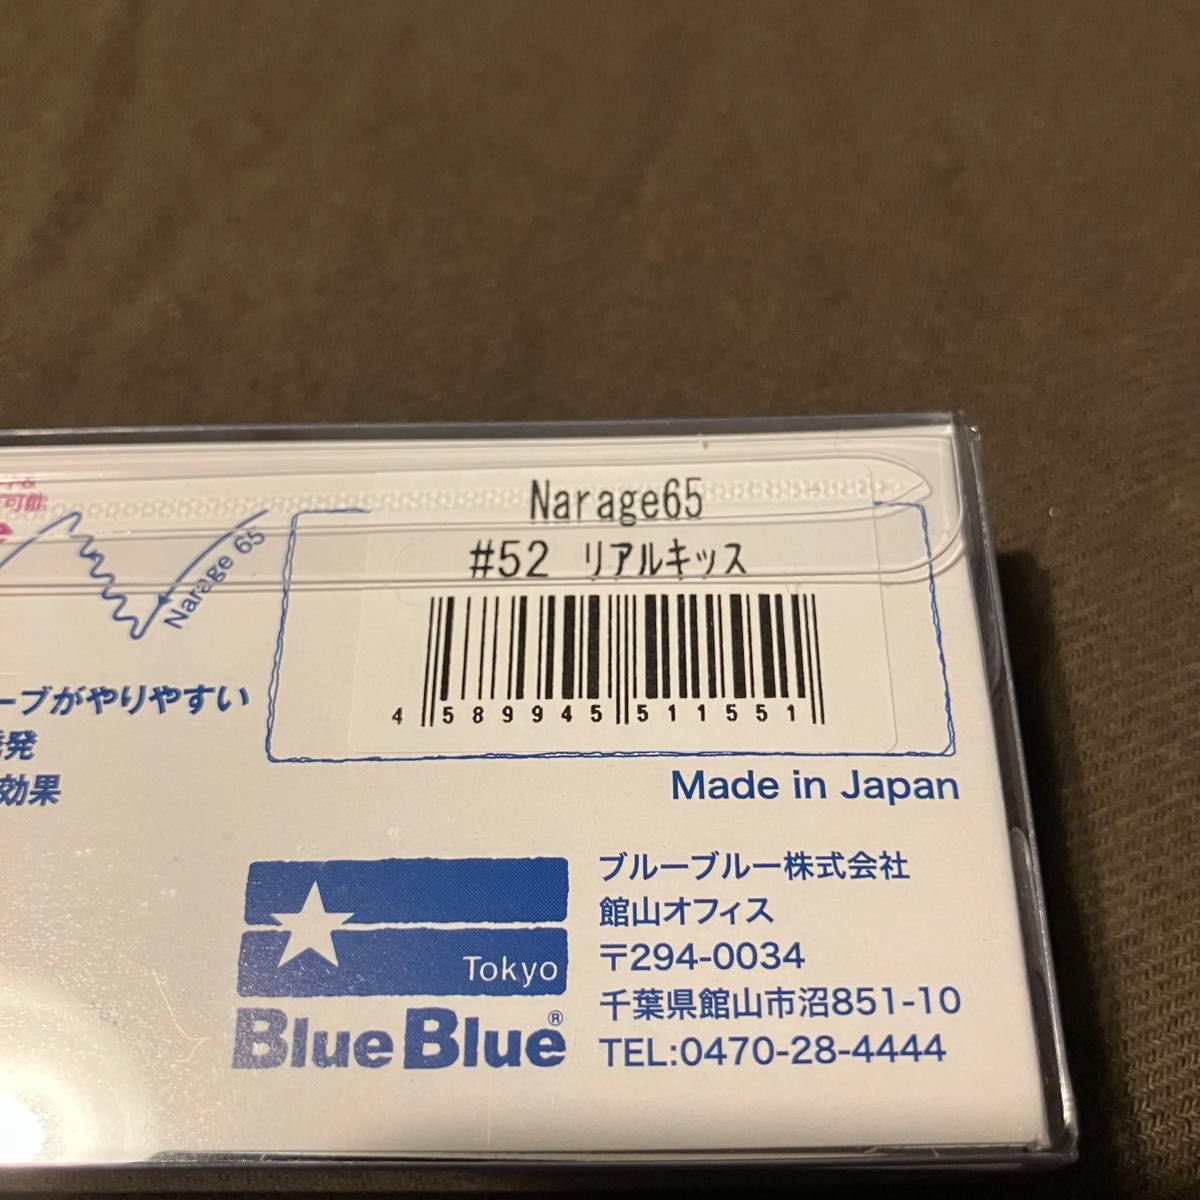 ブルーブルー ナレージ 65 リアルキッス fimo オリカラ Blue Blue Narage フィーモ